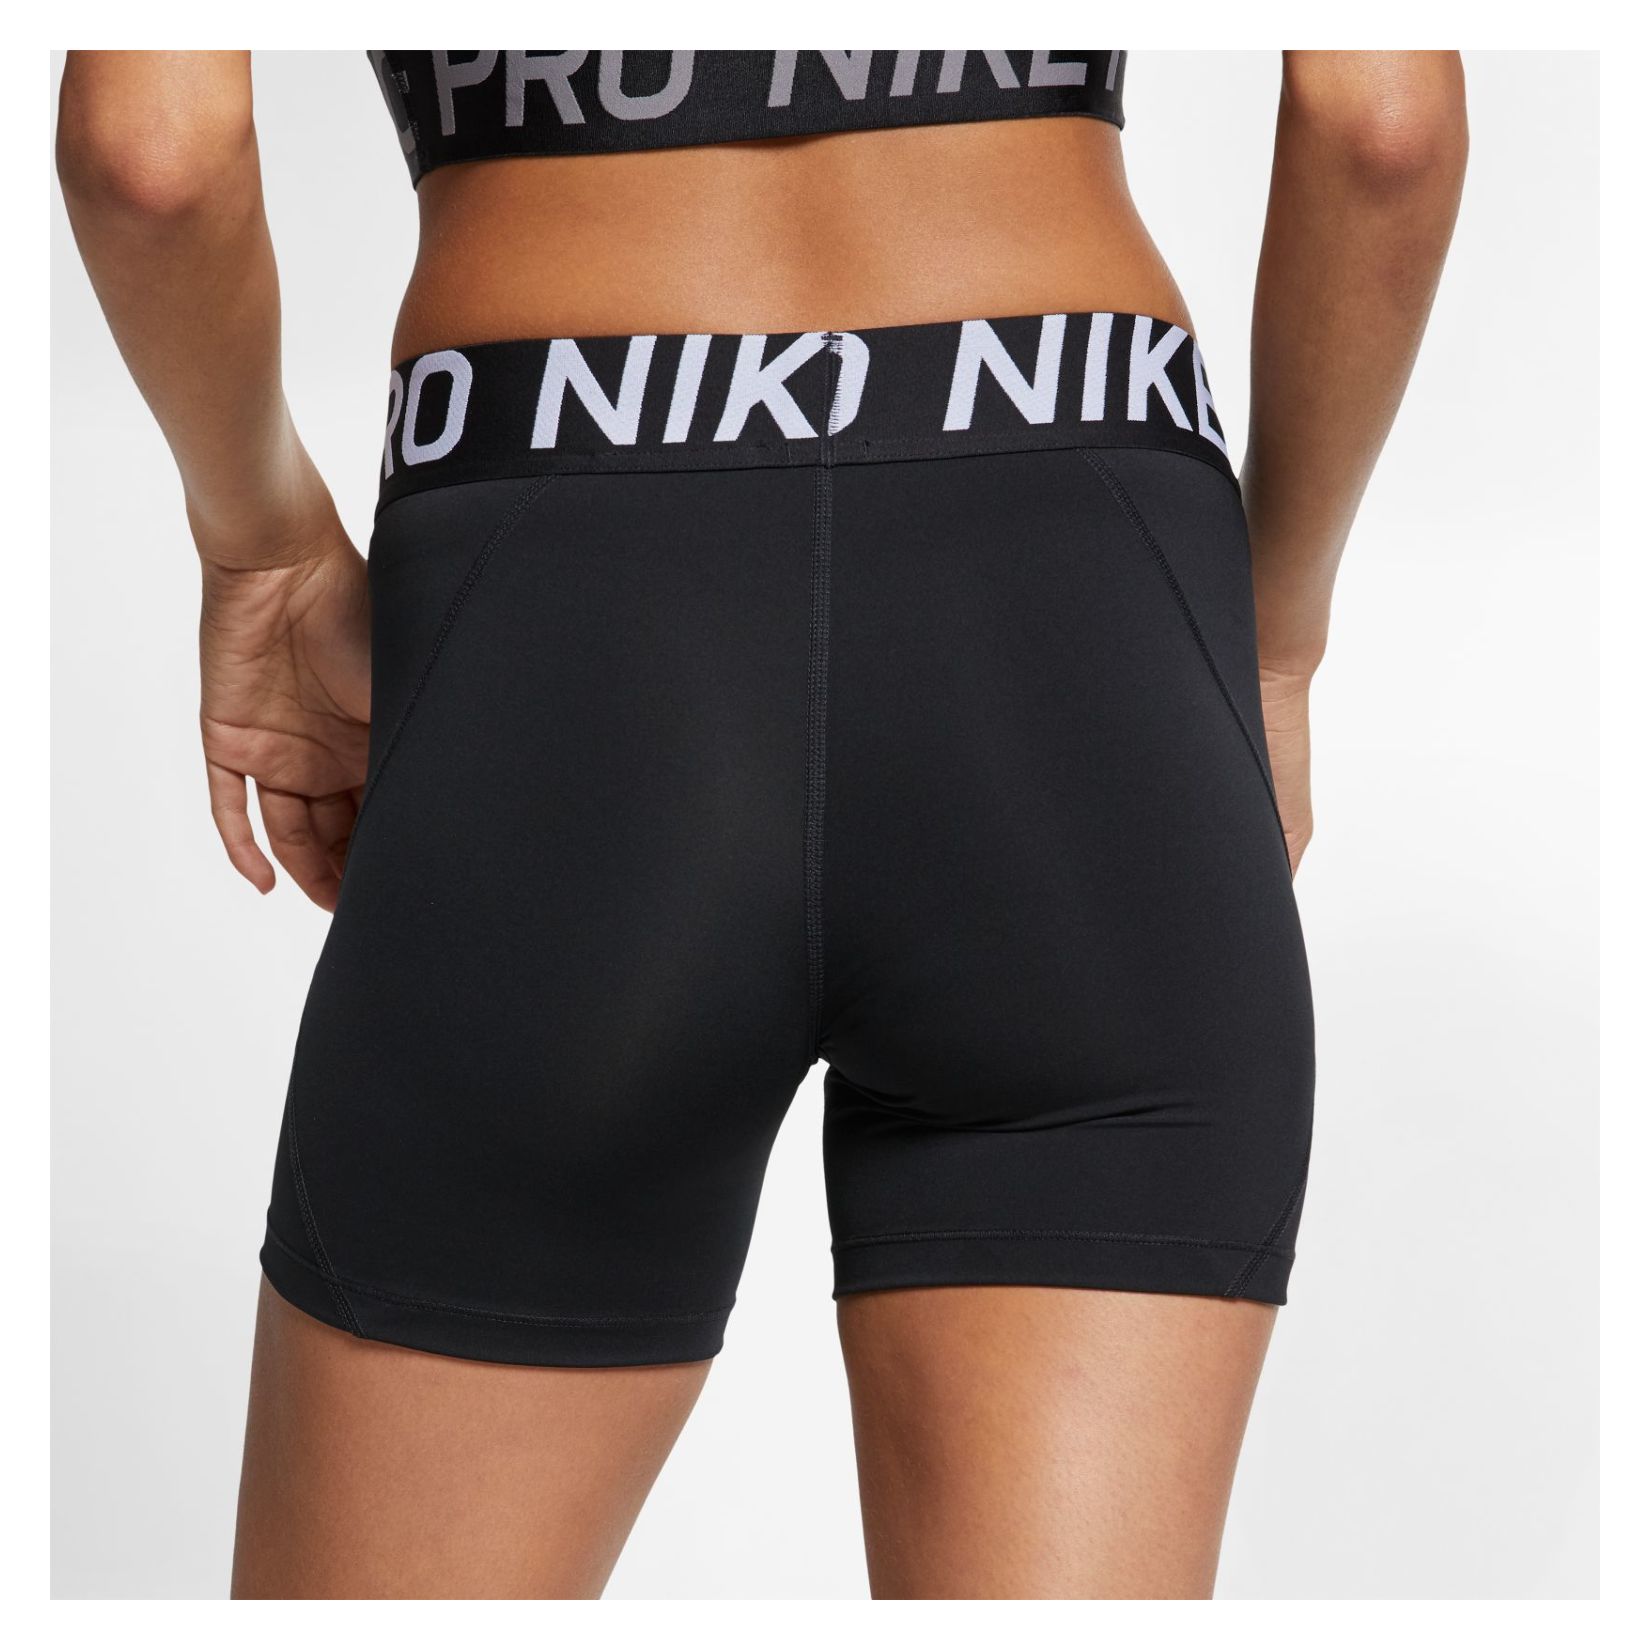 nike pro shorts women's 5 inch